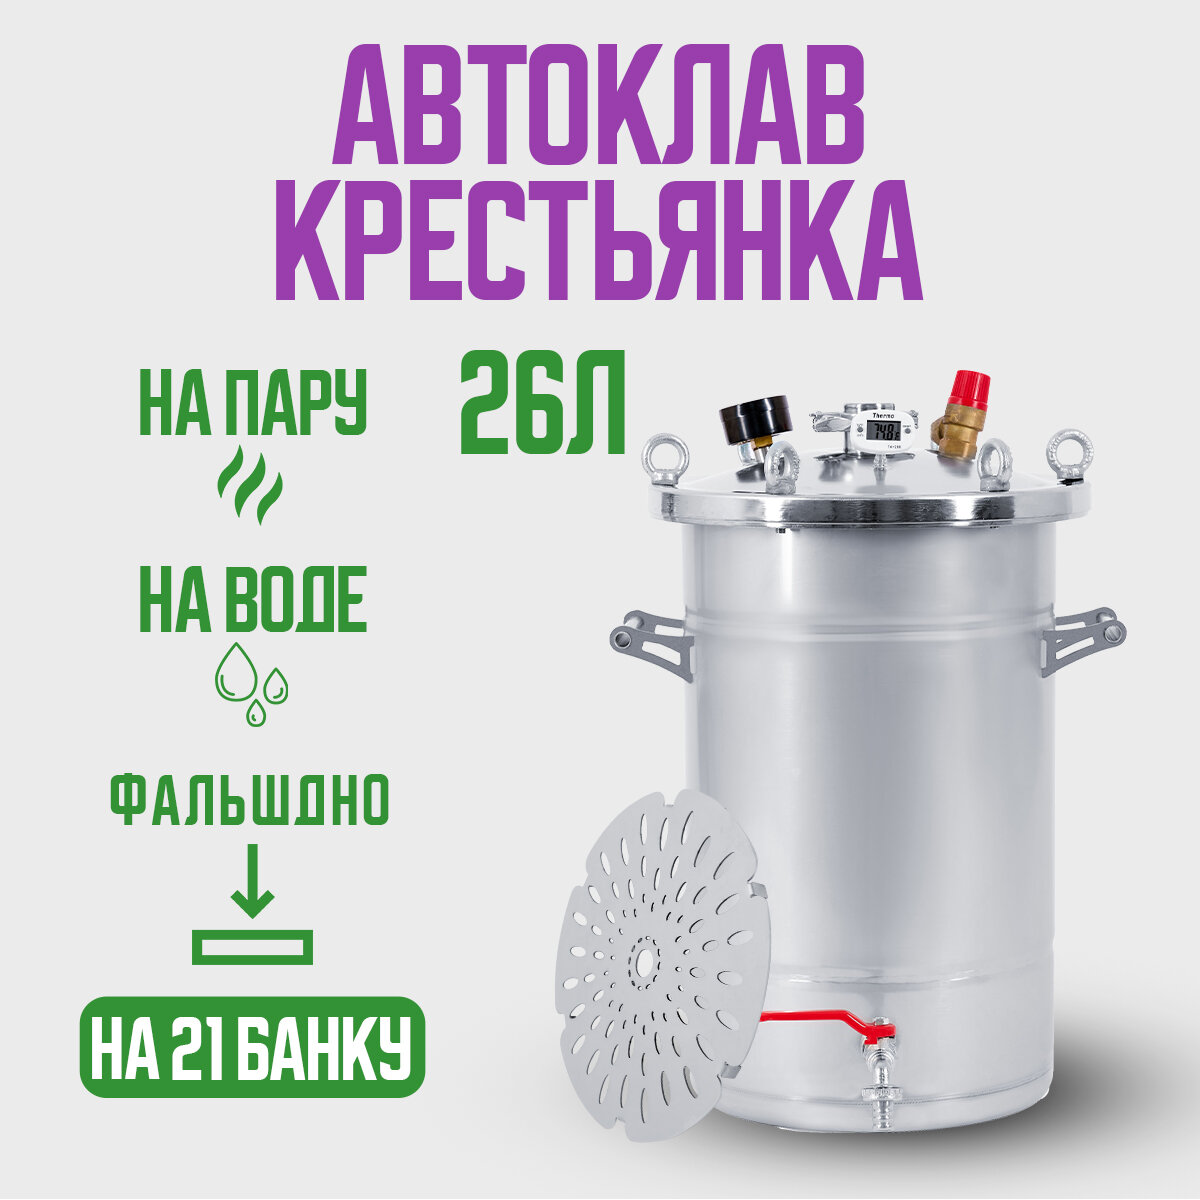 Автоклав Крестьянка на 26 литров для домашнего консервирования